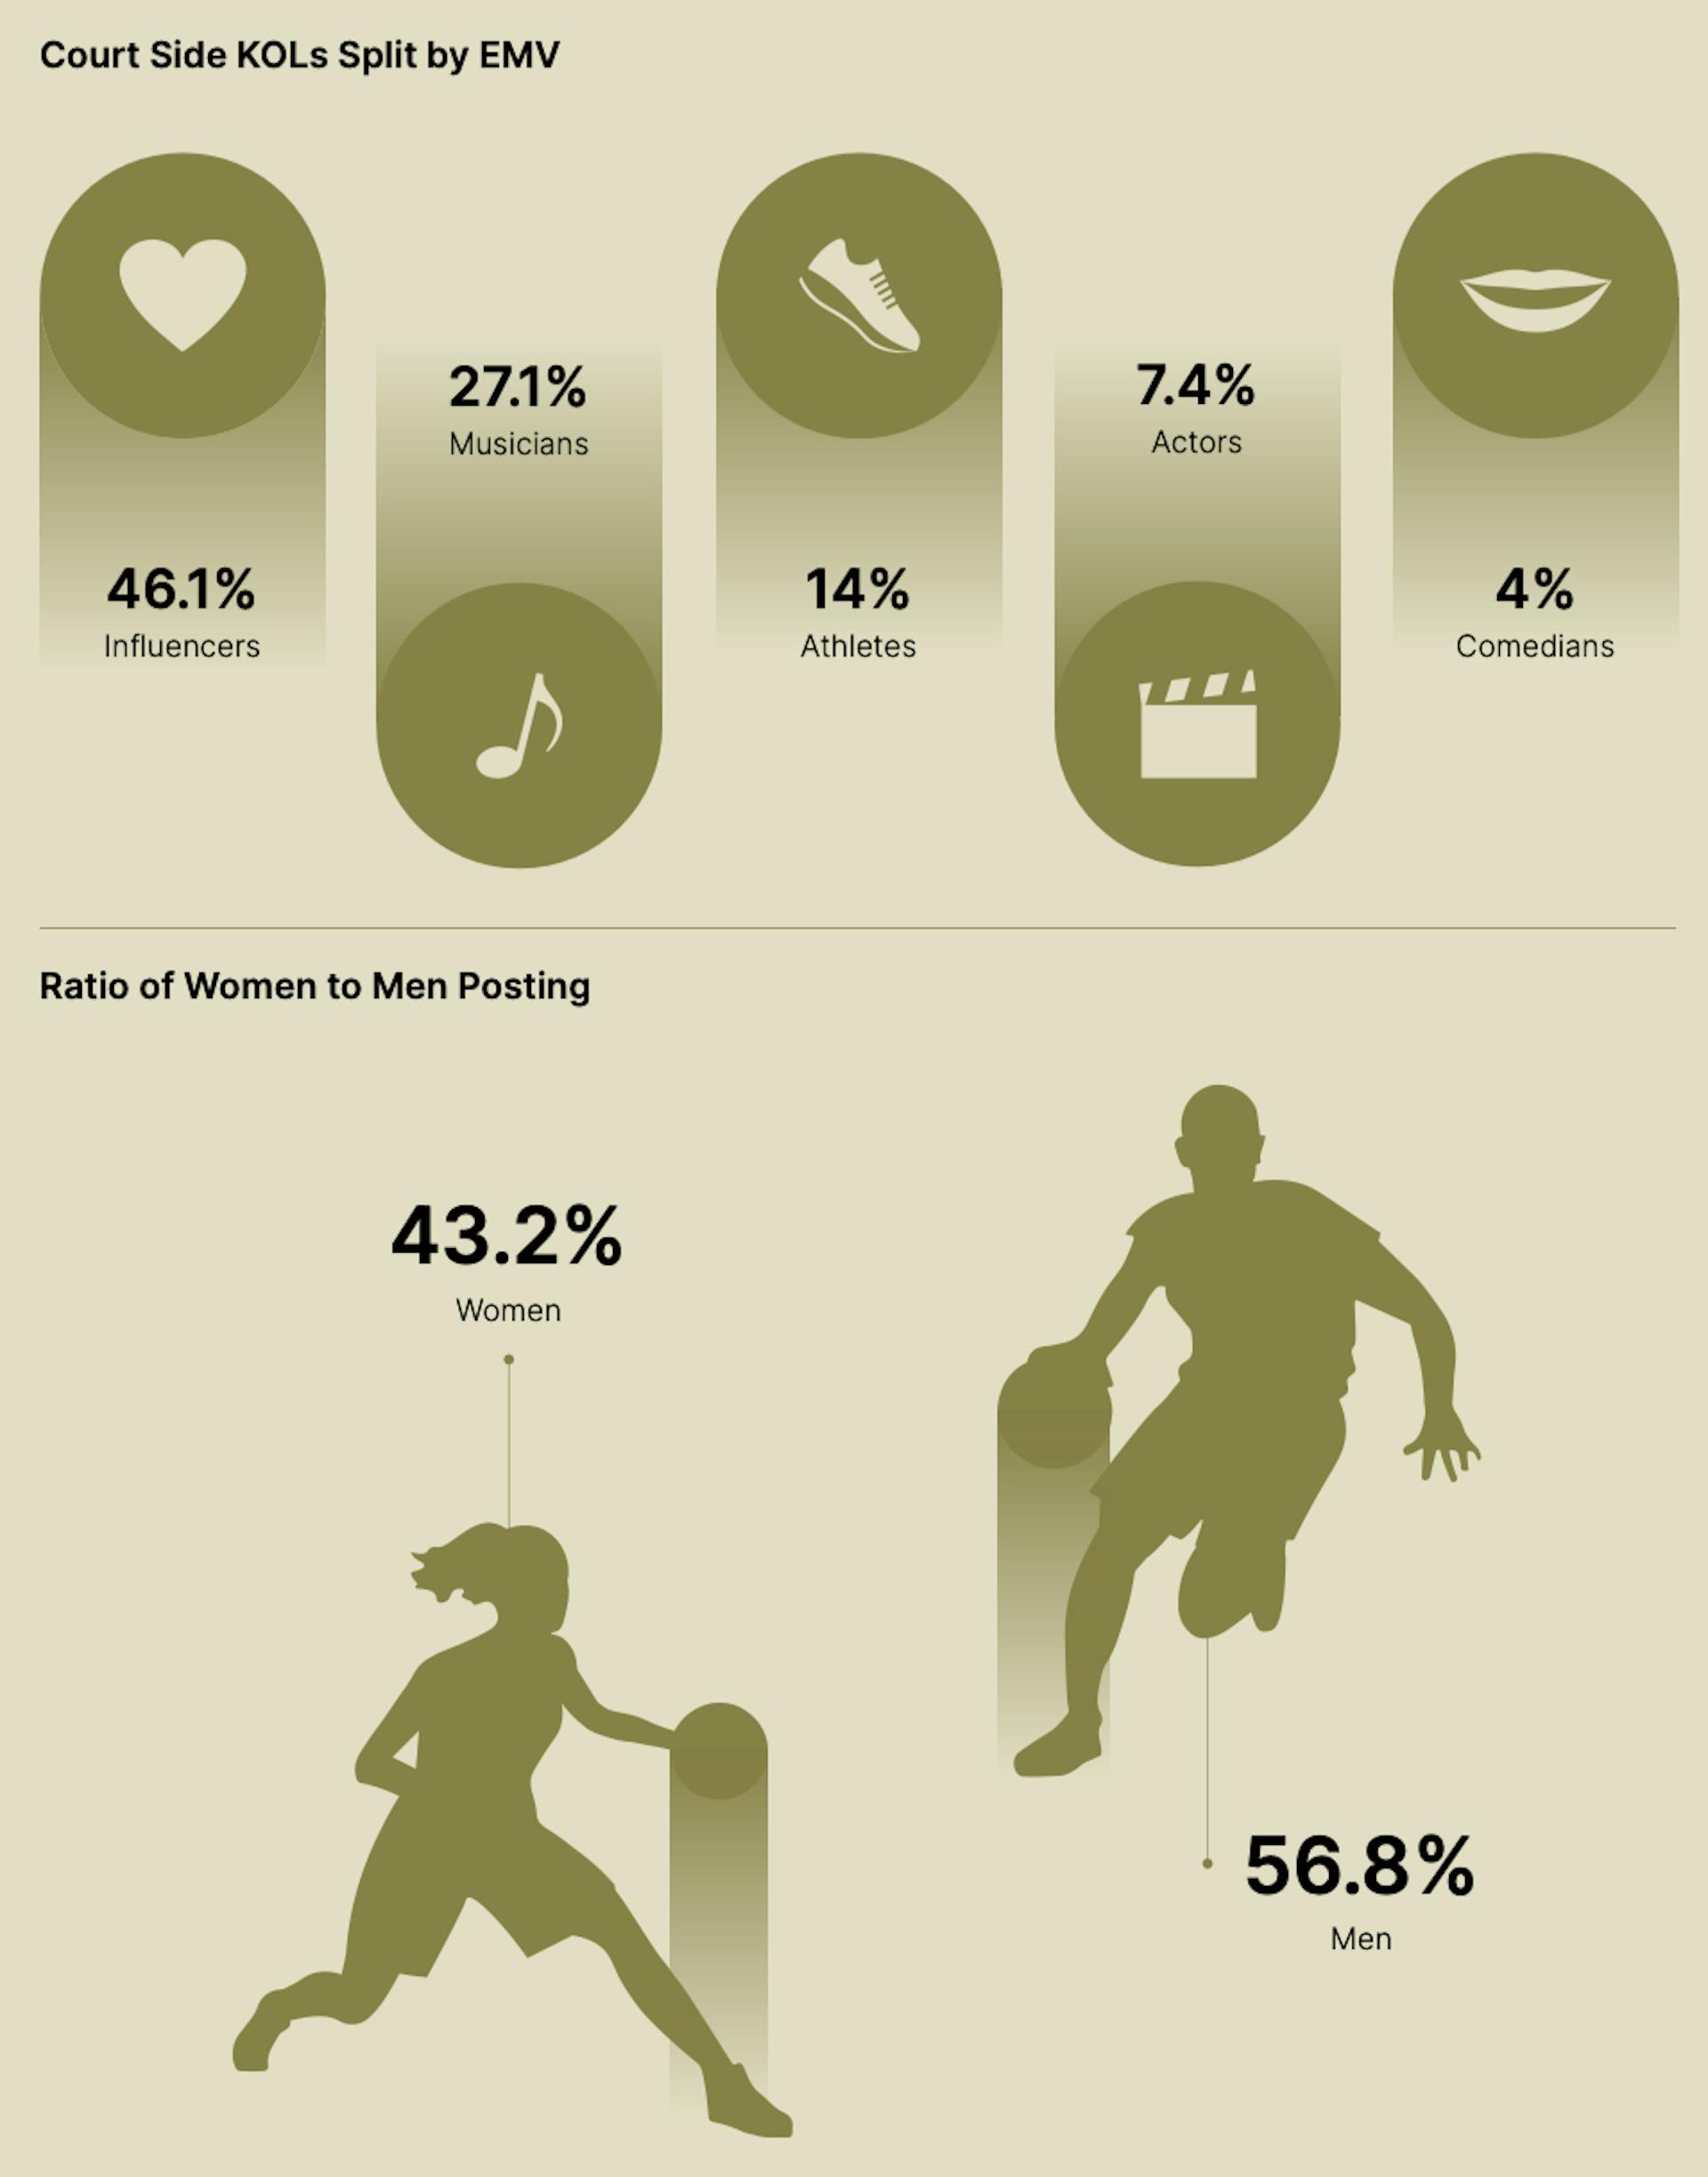 Influencer and NBA player demographics. 